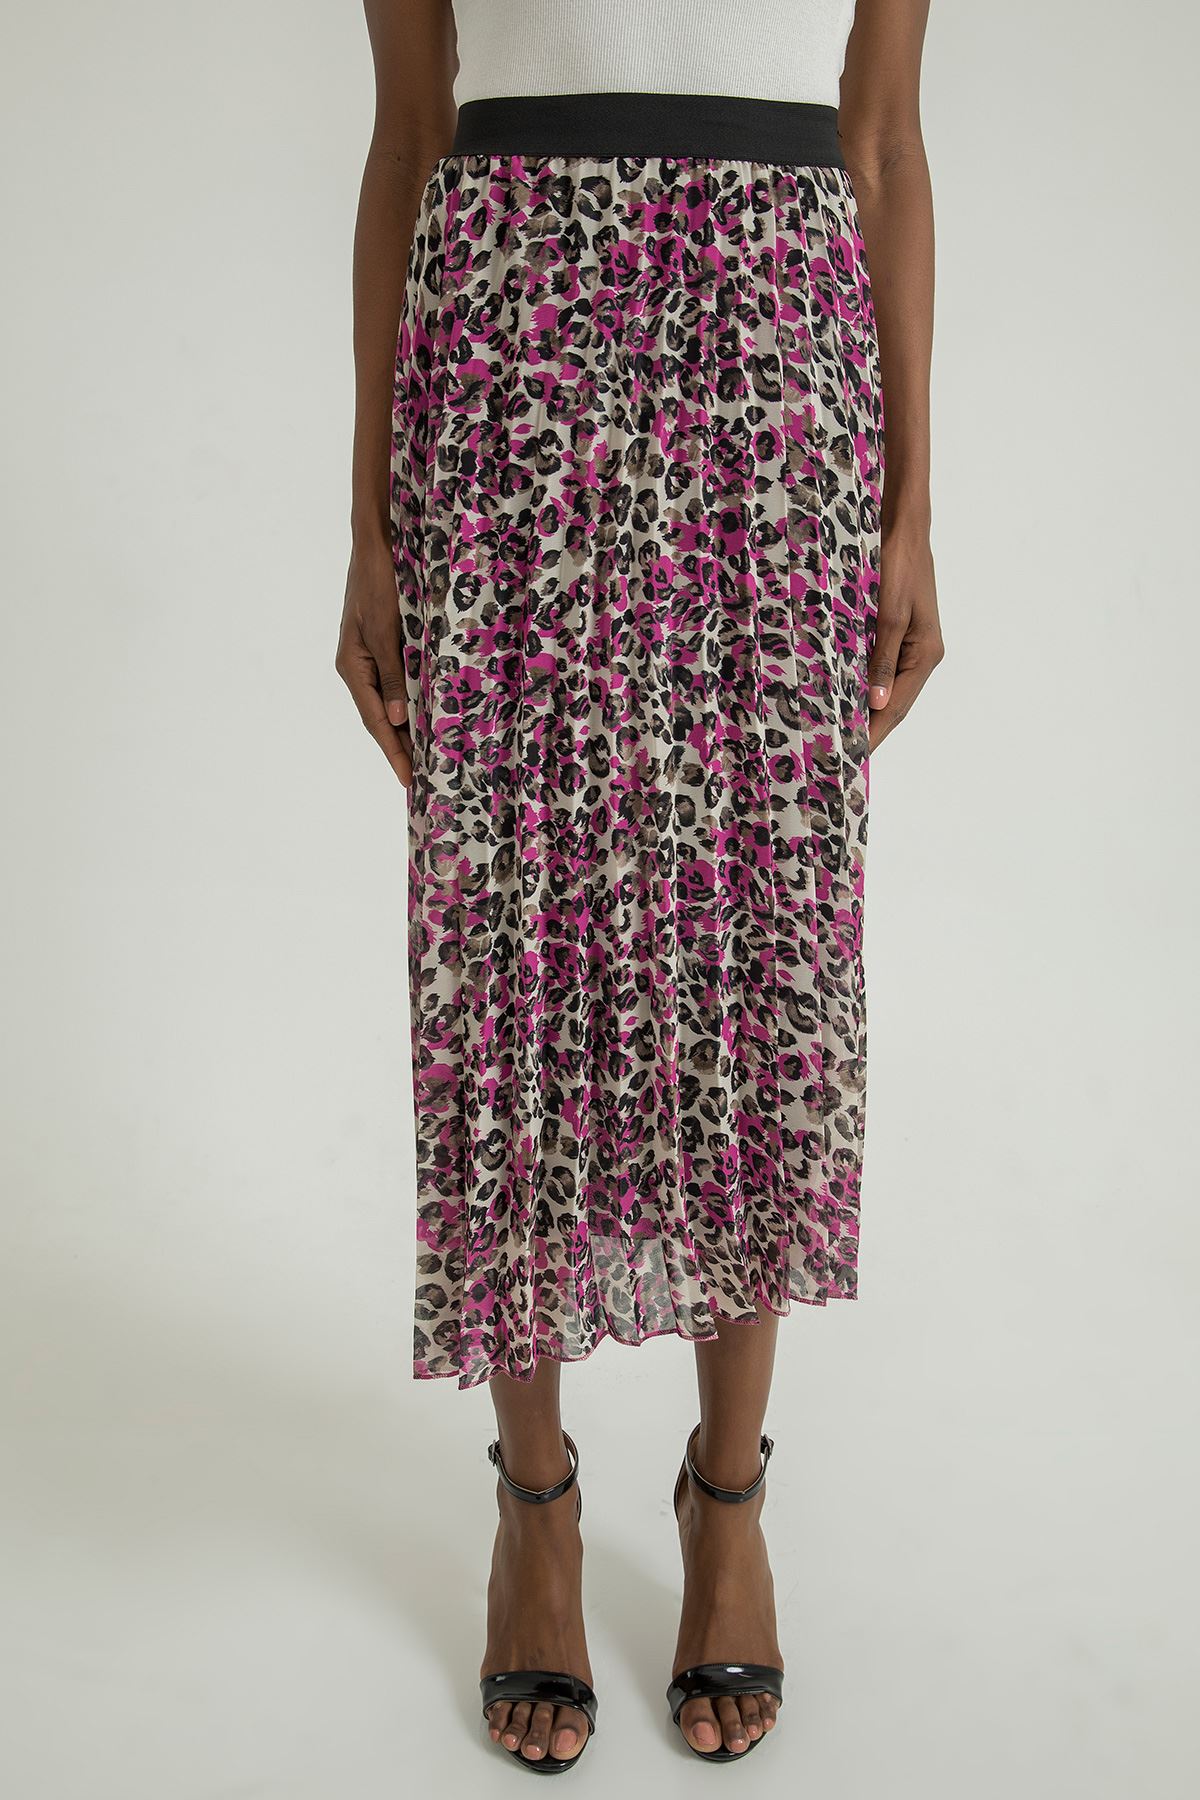 Chiffon Fabric Midi Comfy Fit Leopard Print Pleated Women'S Skirt - Fuchıa